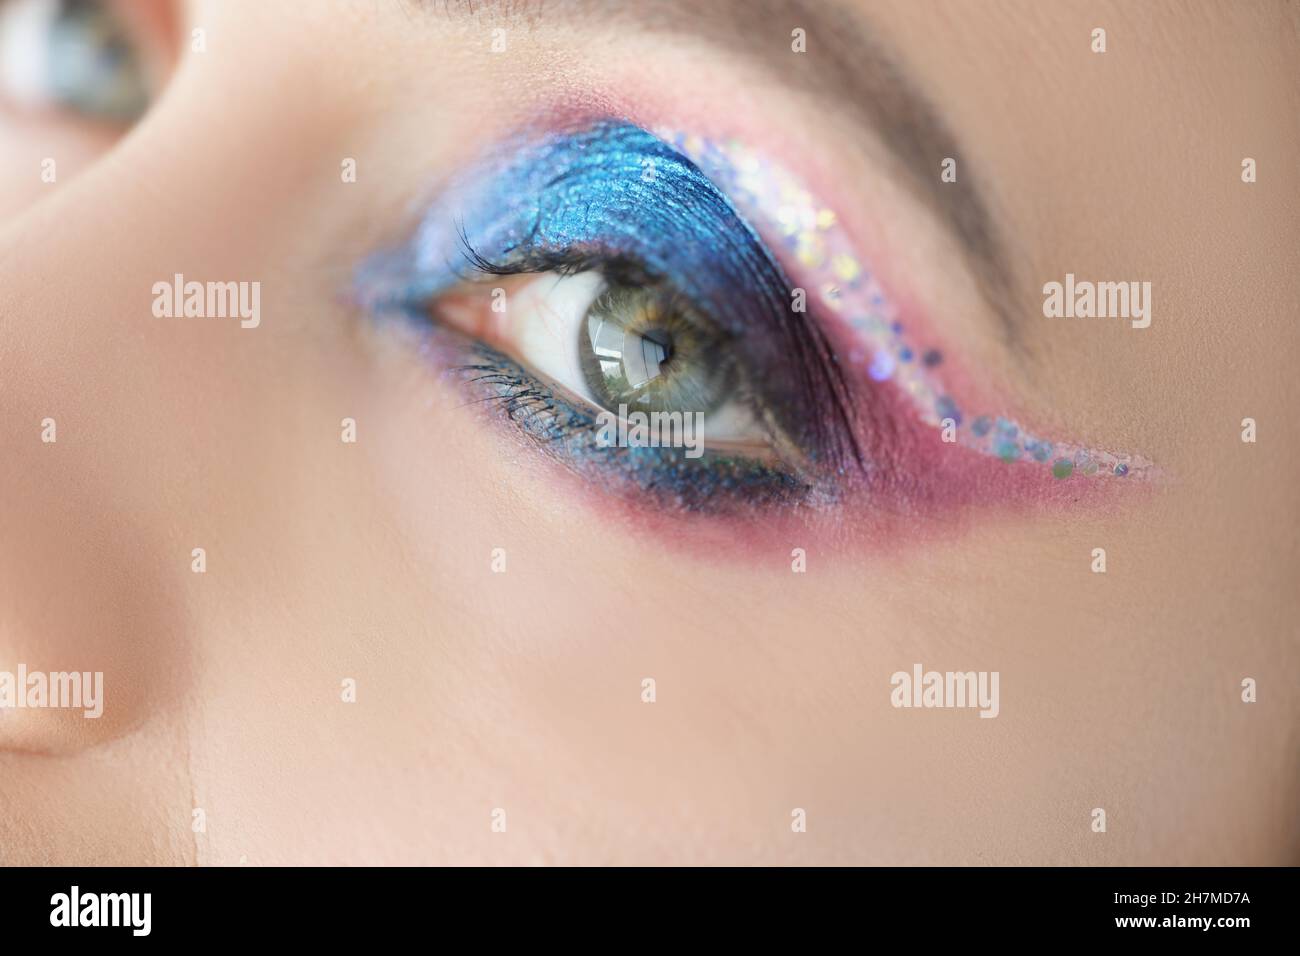 Maquillaje festivo para ojos brillantes en la cara de las mujeres con purpurina azul y rosa Foto de stock